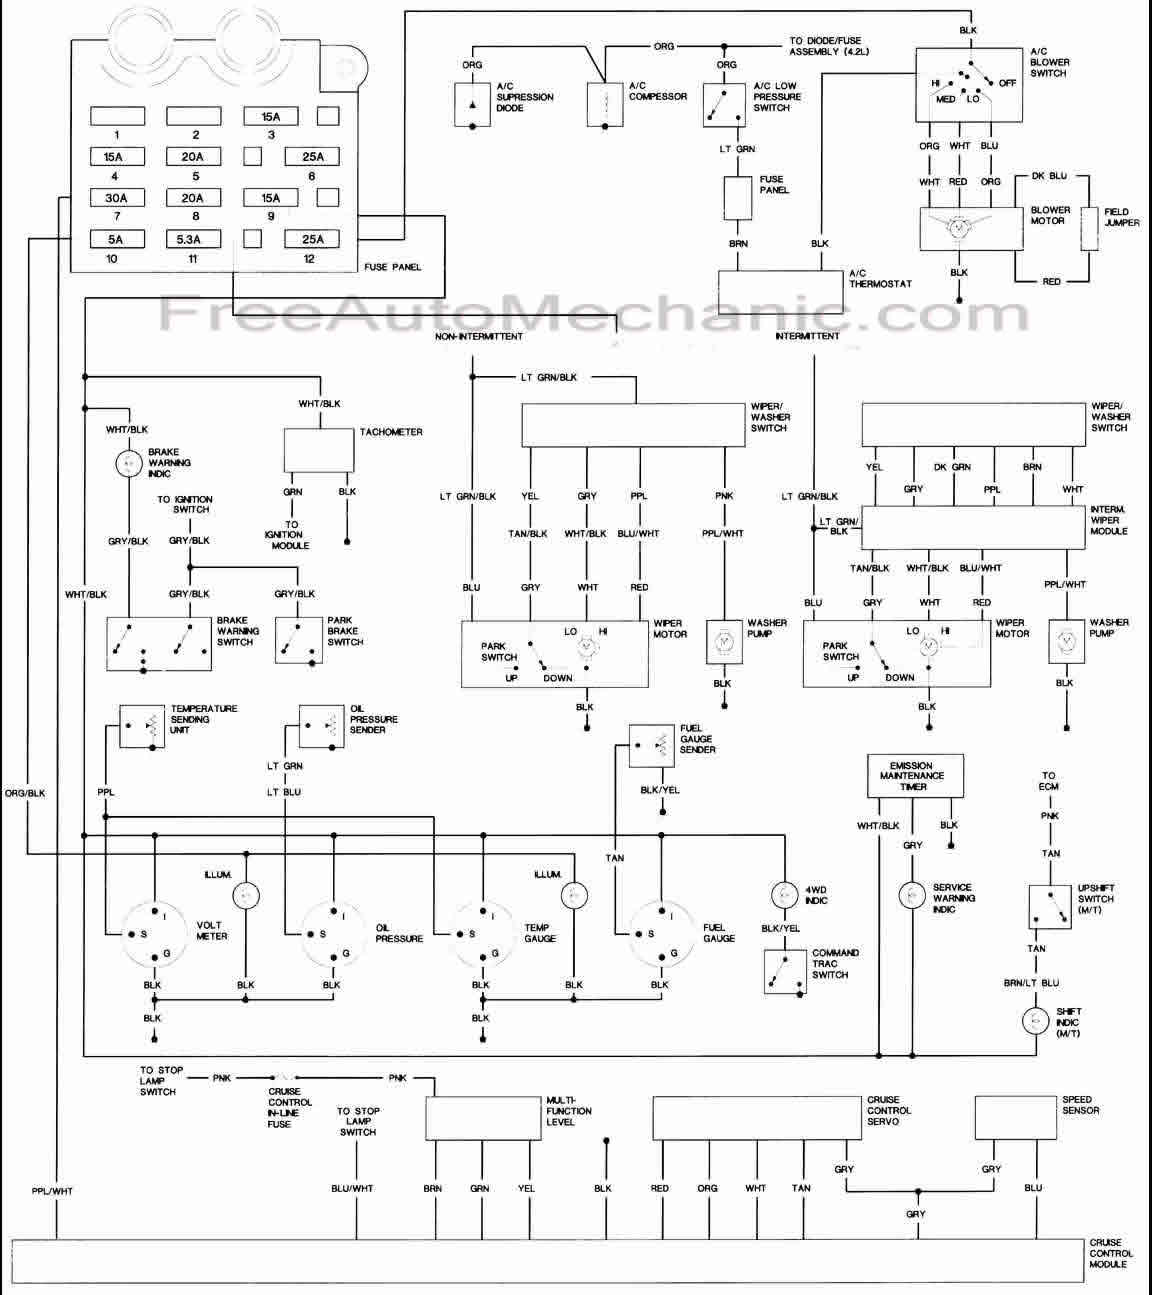 Jeep Yj Headlight Switch Wiring Diagram from www.freeautomechanic.com